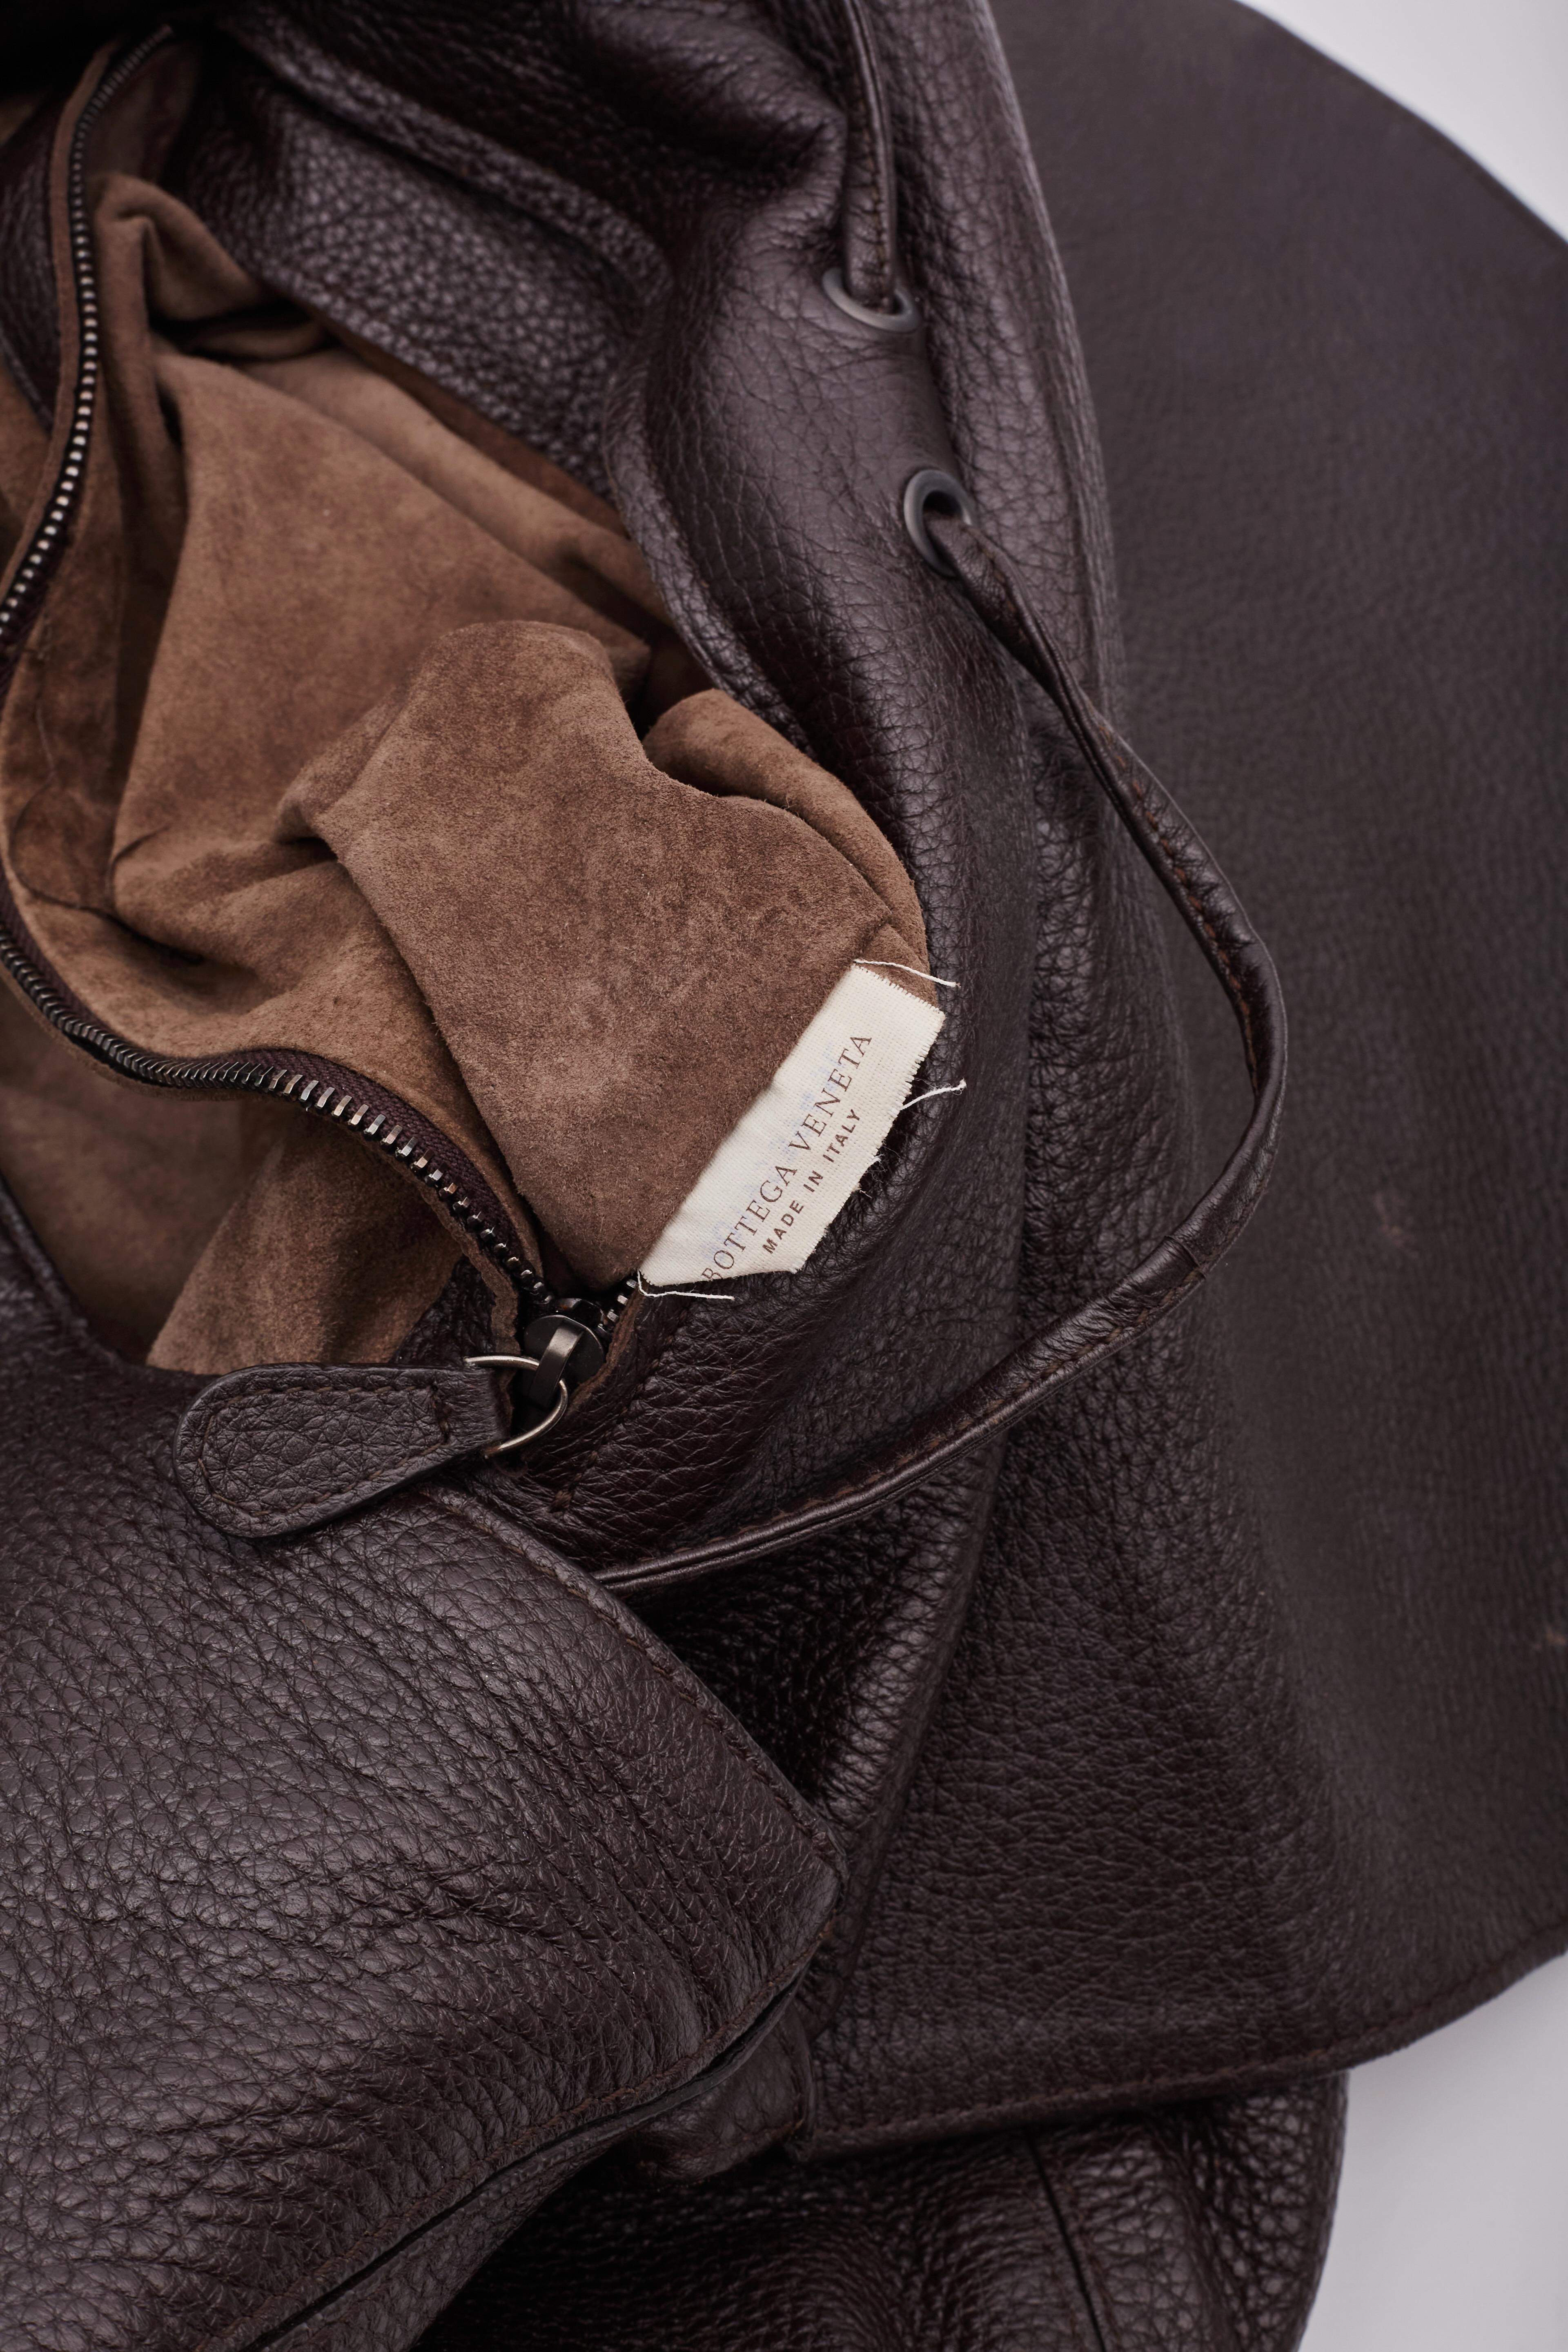 Bottega Veneta Intrecciato Copper Brown Leather Hobo Bag For Sale 7